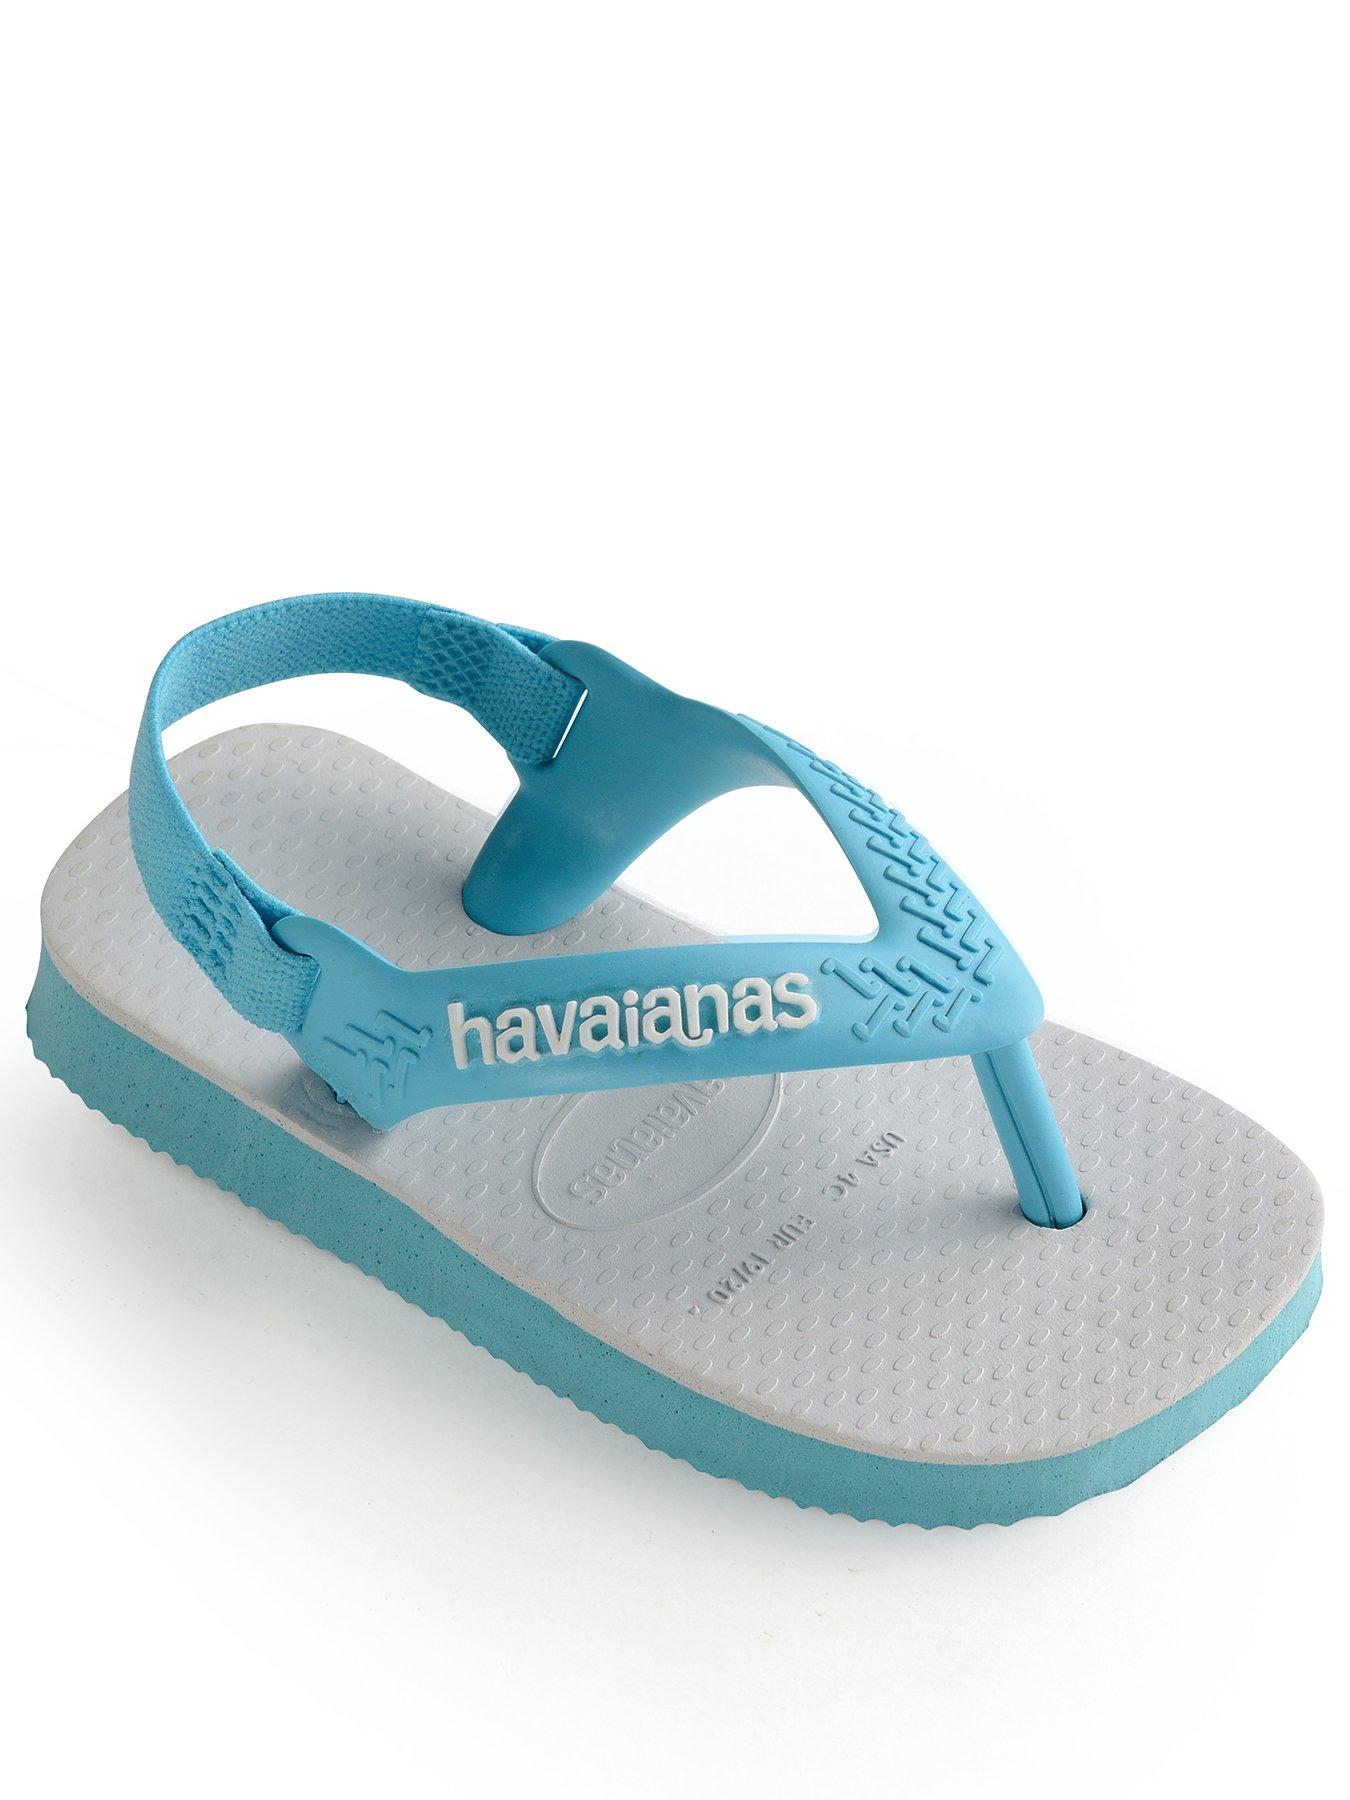 havaianas baby flip flops